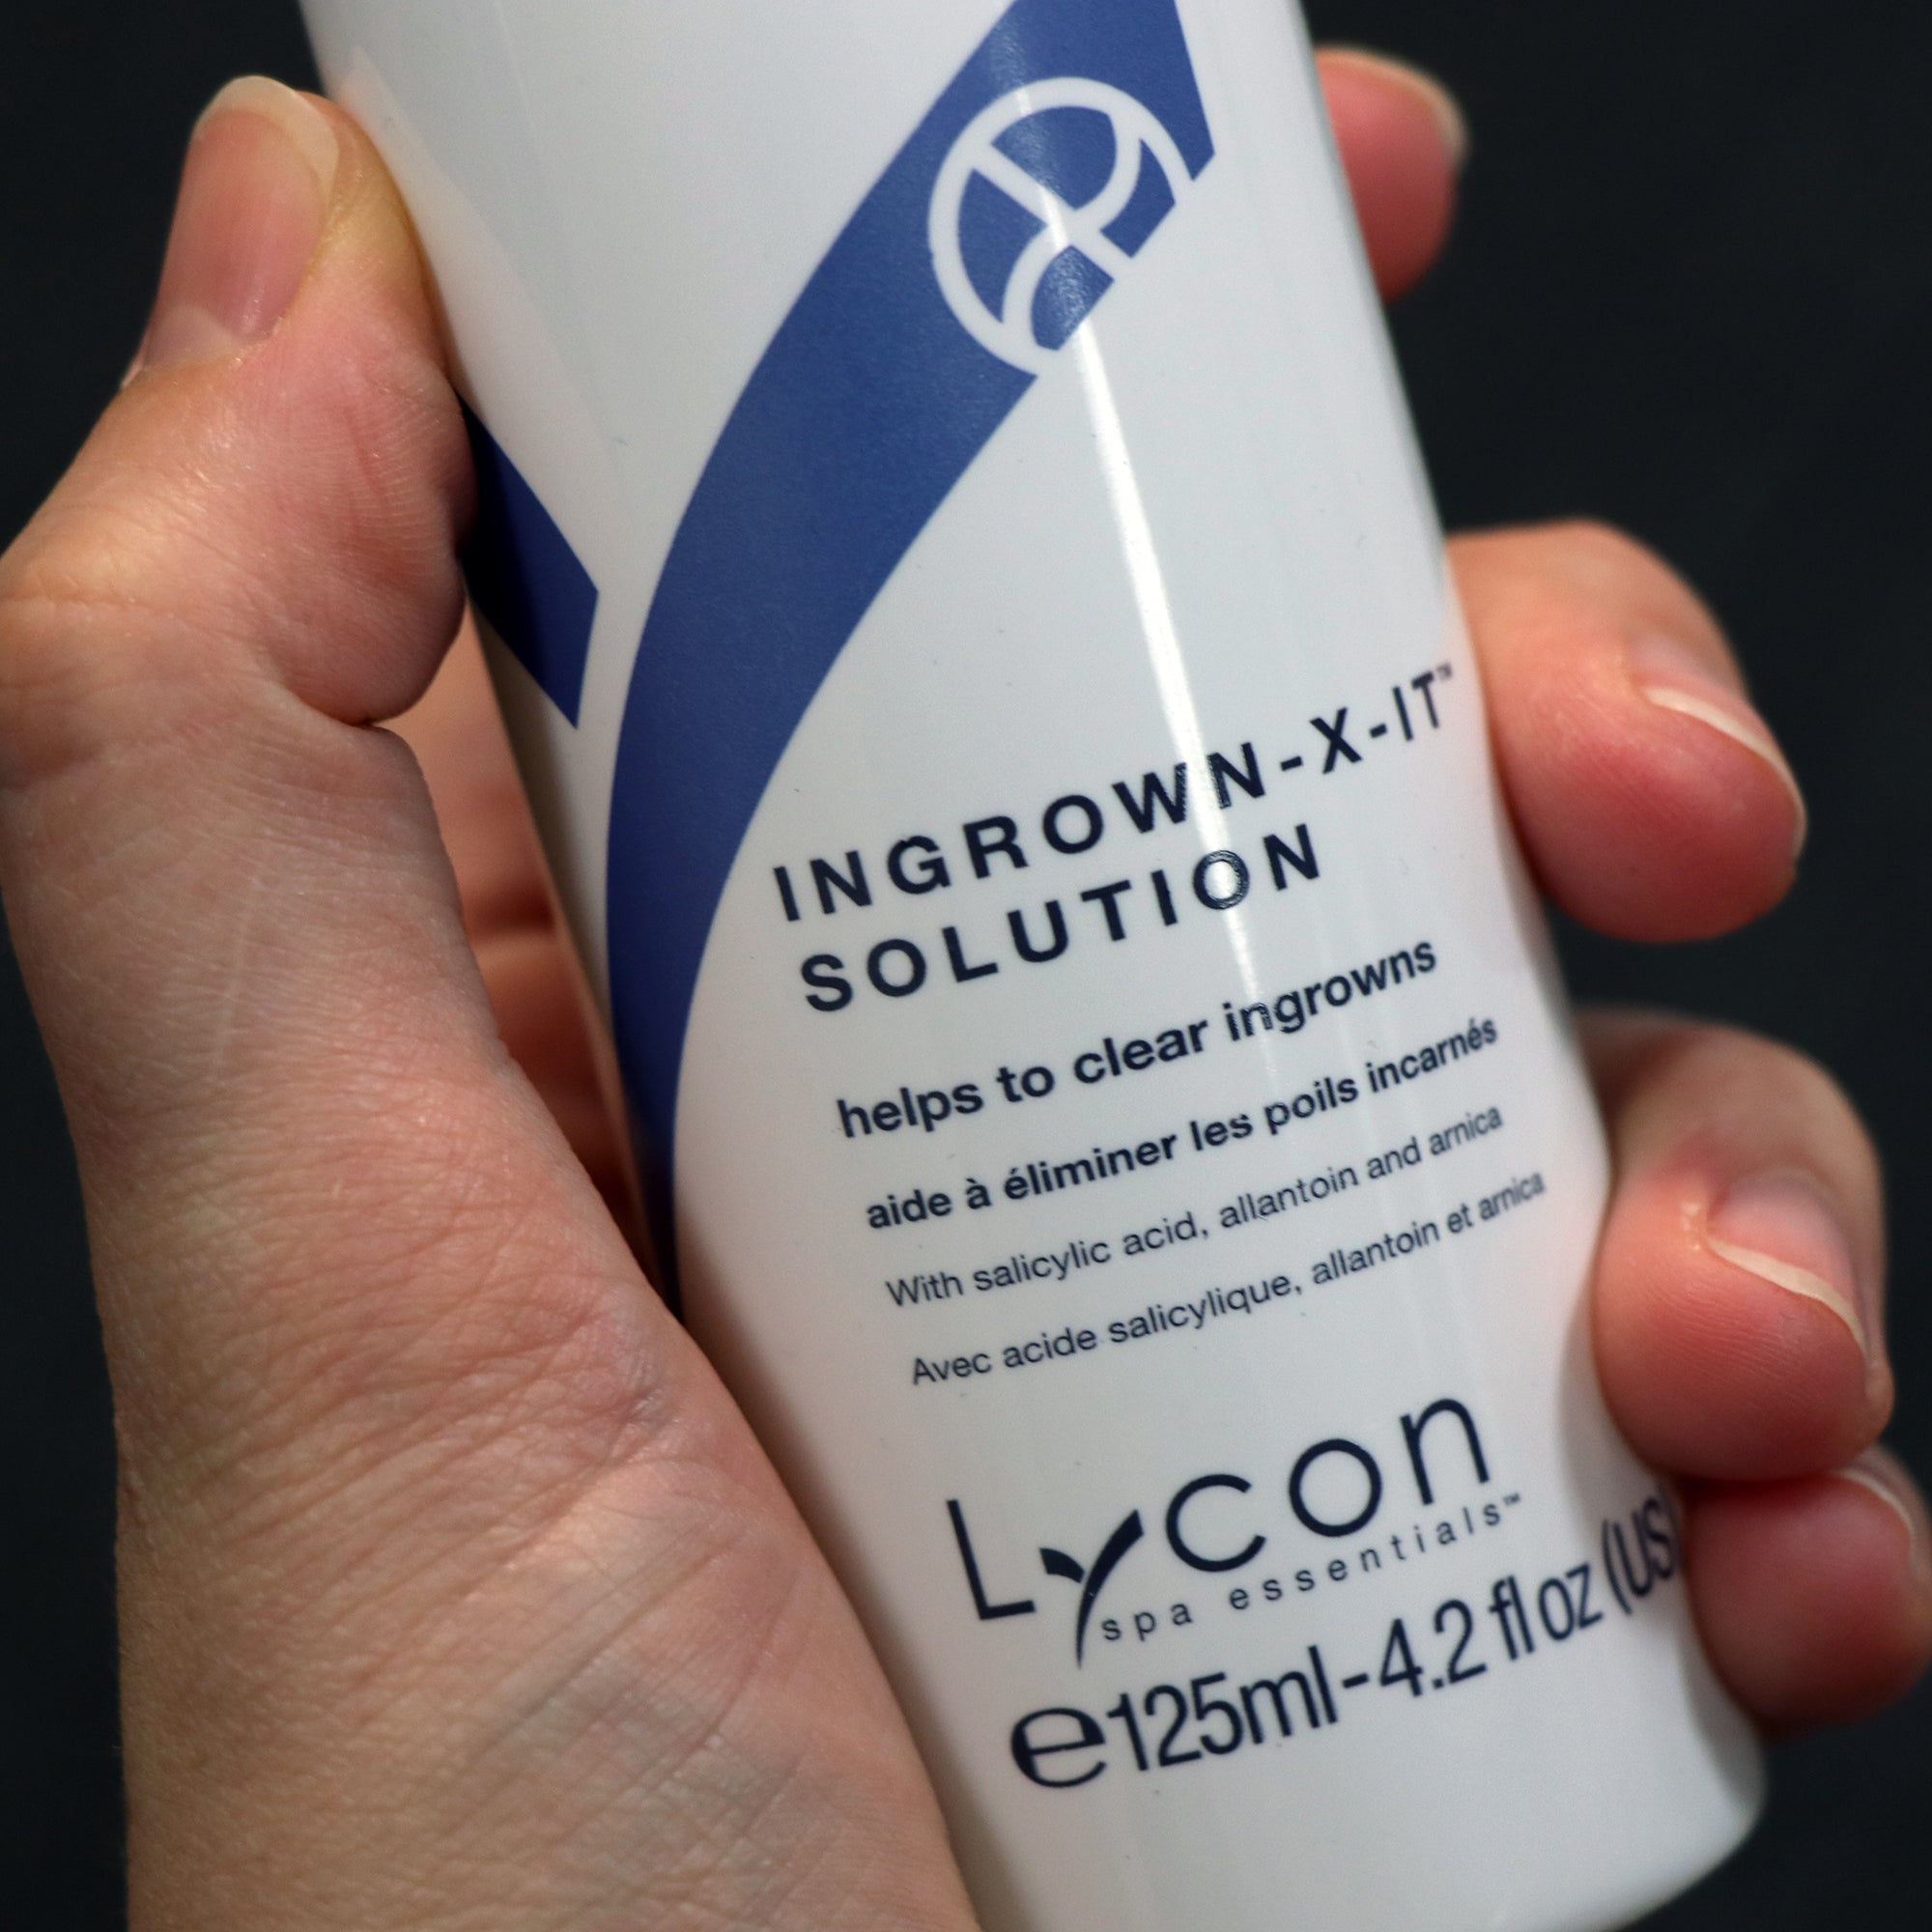 Ingrown X-IT™ Solution - 125ml - Ingrown Hair Serum That Works - Retail